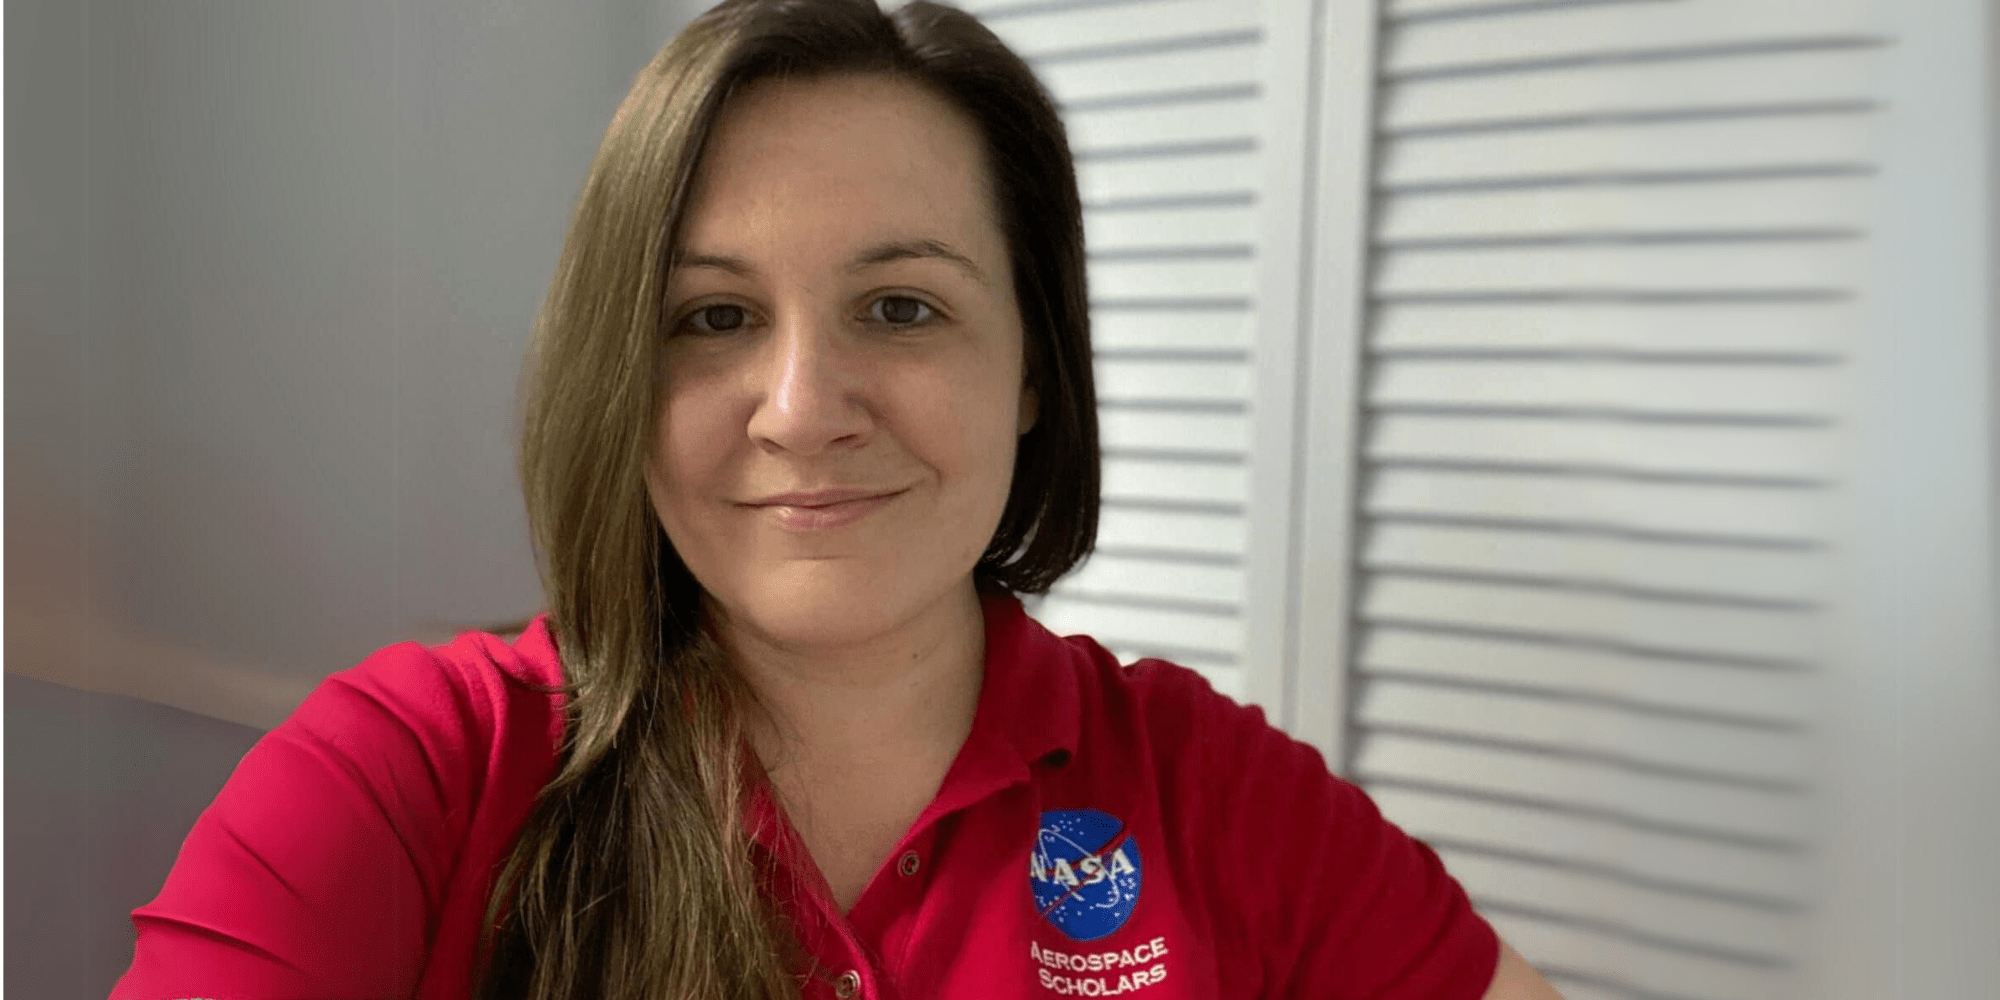 M.S. in Human Factors grad Nicole Schoenstein shows off her NASA Aerospace Scholars shirt. (Photo: Nicole Schoenstein)